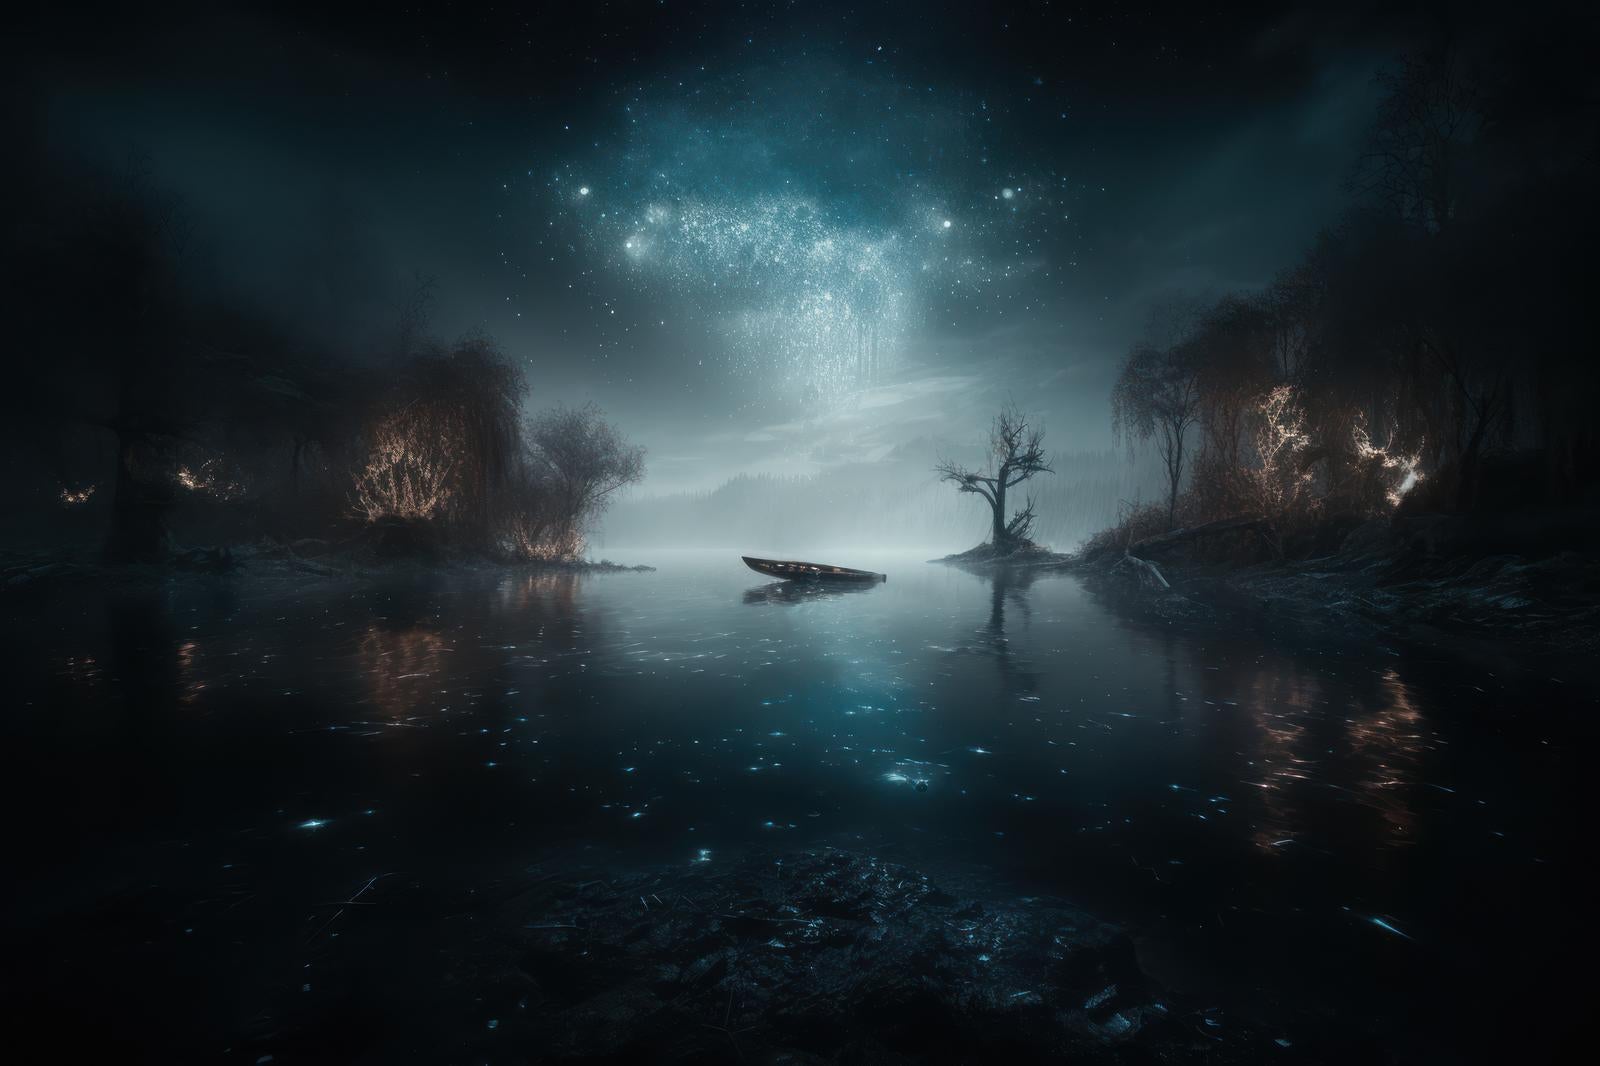 「暗がりの湖面と不気味な小舟」の写真